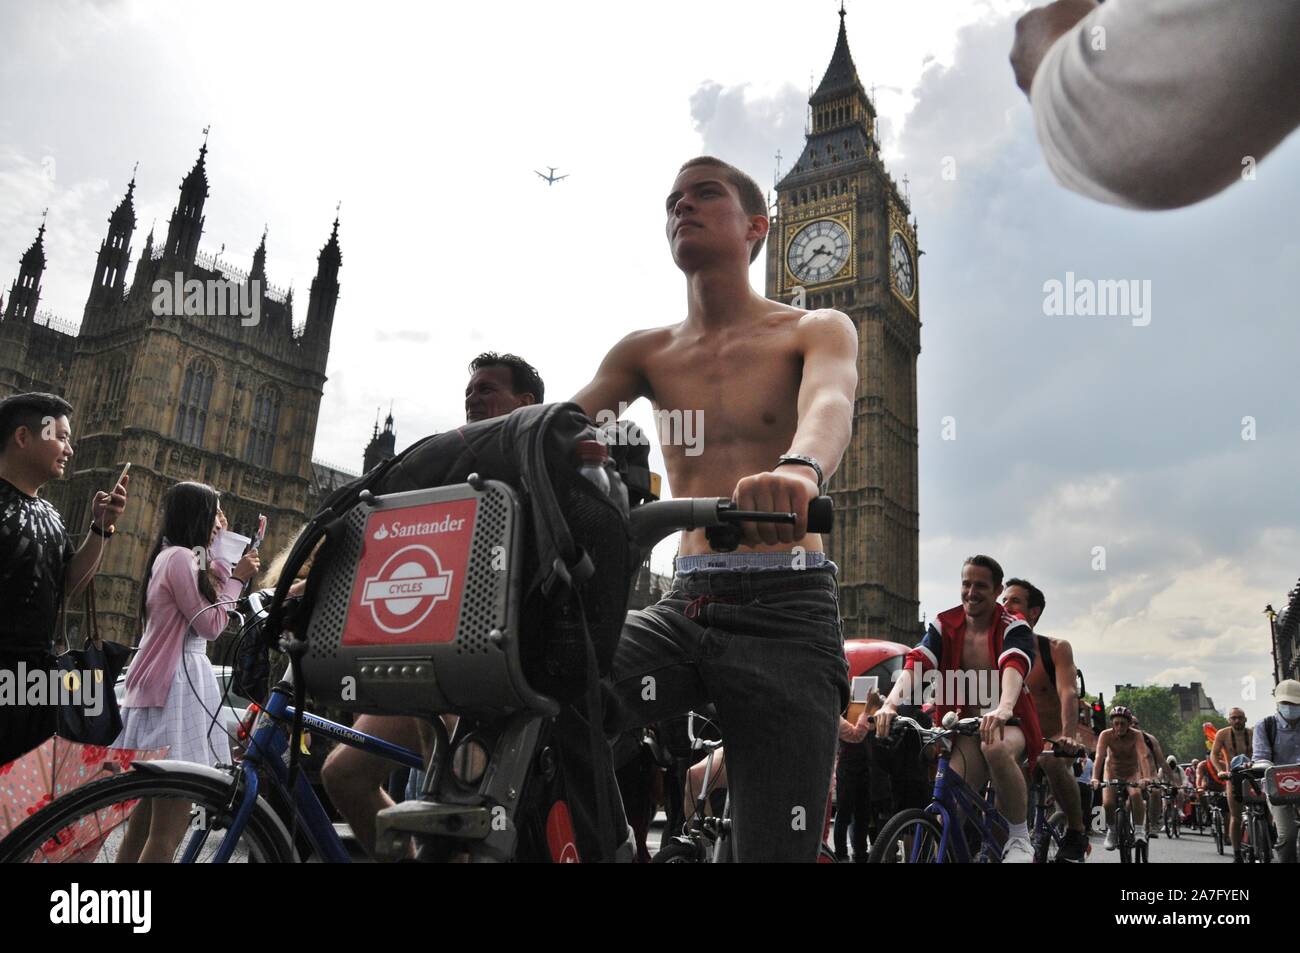 Umweltschützer Zyklus nackt durch London, aus Protest gegen die Schäden durch Verkehr, auf fossile Brennstoffe angewiesen. Stockfoto